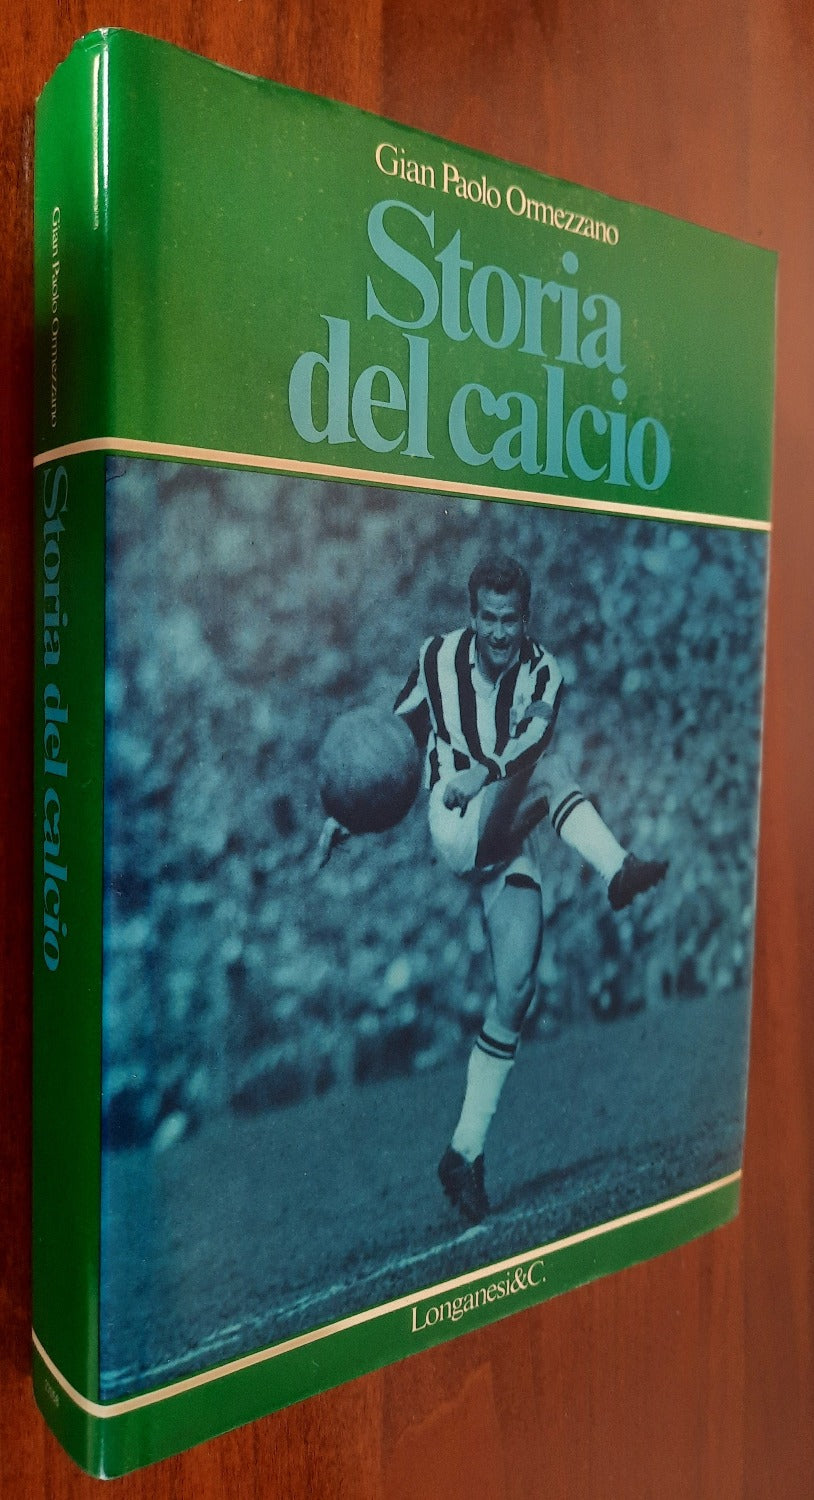 Storia del calcio - Longanesi & C. - 1978